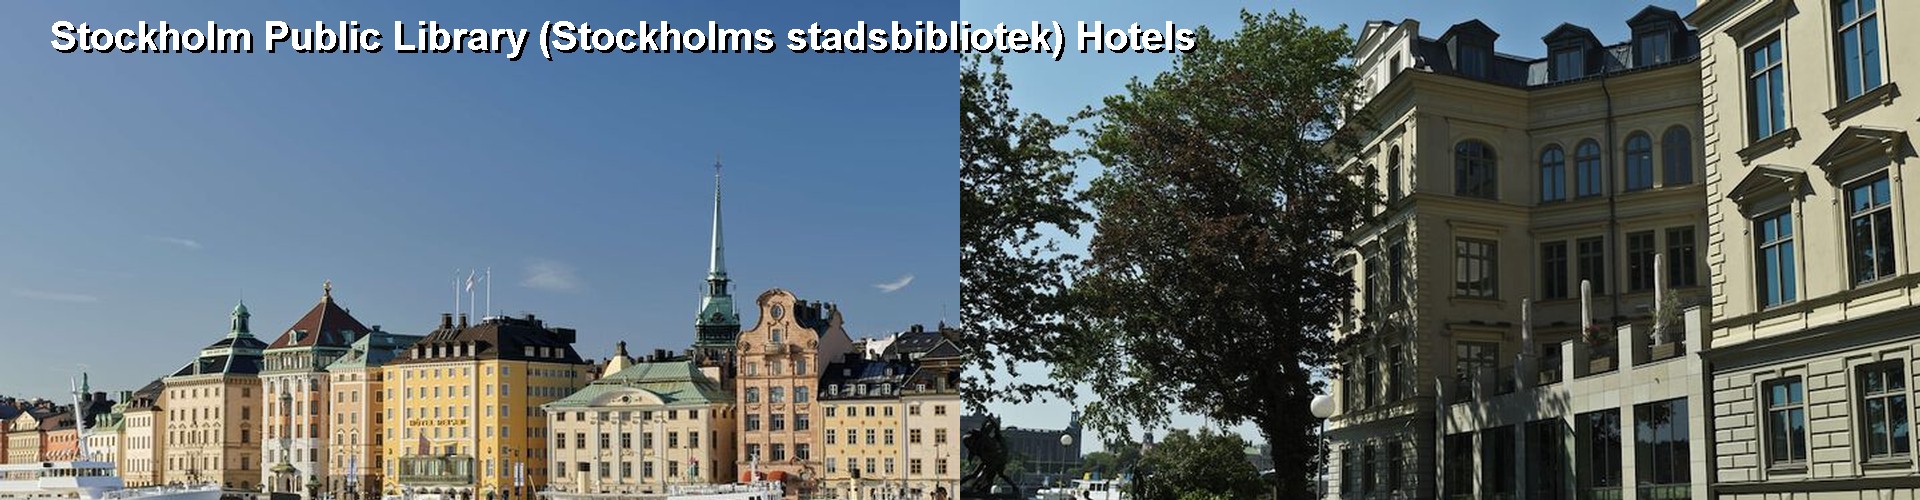 5 Best Hotels near Stockholm Public Library (Stockholms stadsbibliotek)